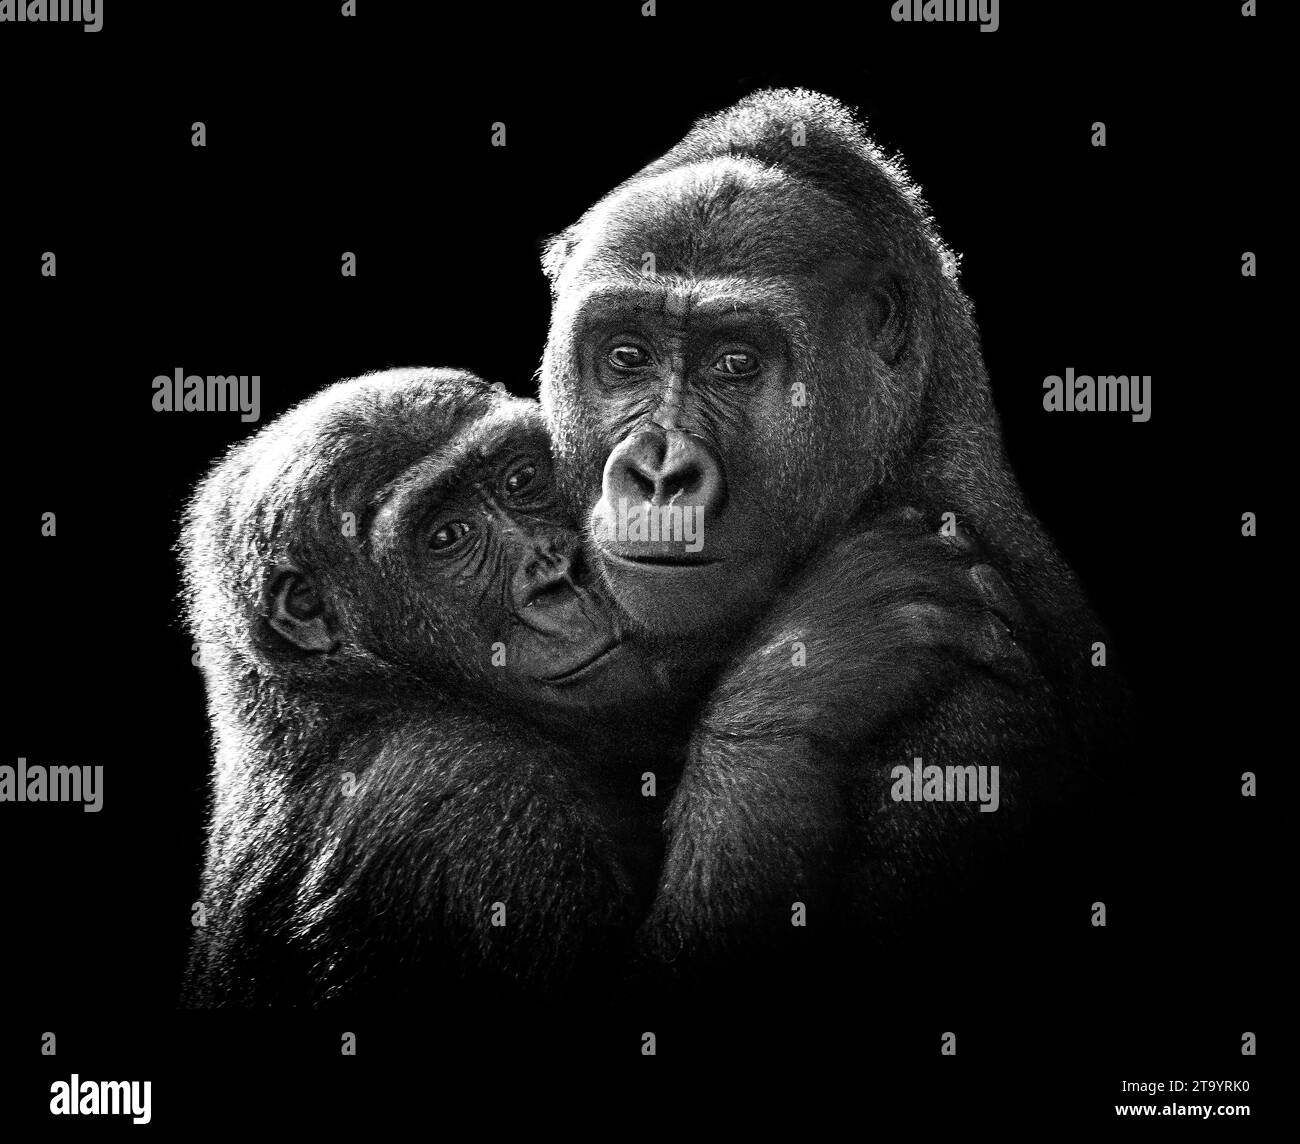 Das Gorillapärchen schaut den Fotografen an, während sie den BLACKPOOL ZOO kuscheln. DIE BEZAUBERNDEN BILDER zeigen zwei halb geschwisterliche Gorillas, die sich kuscheln. I Stockfoto